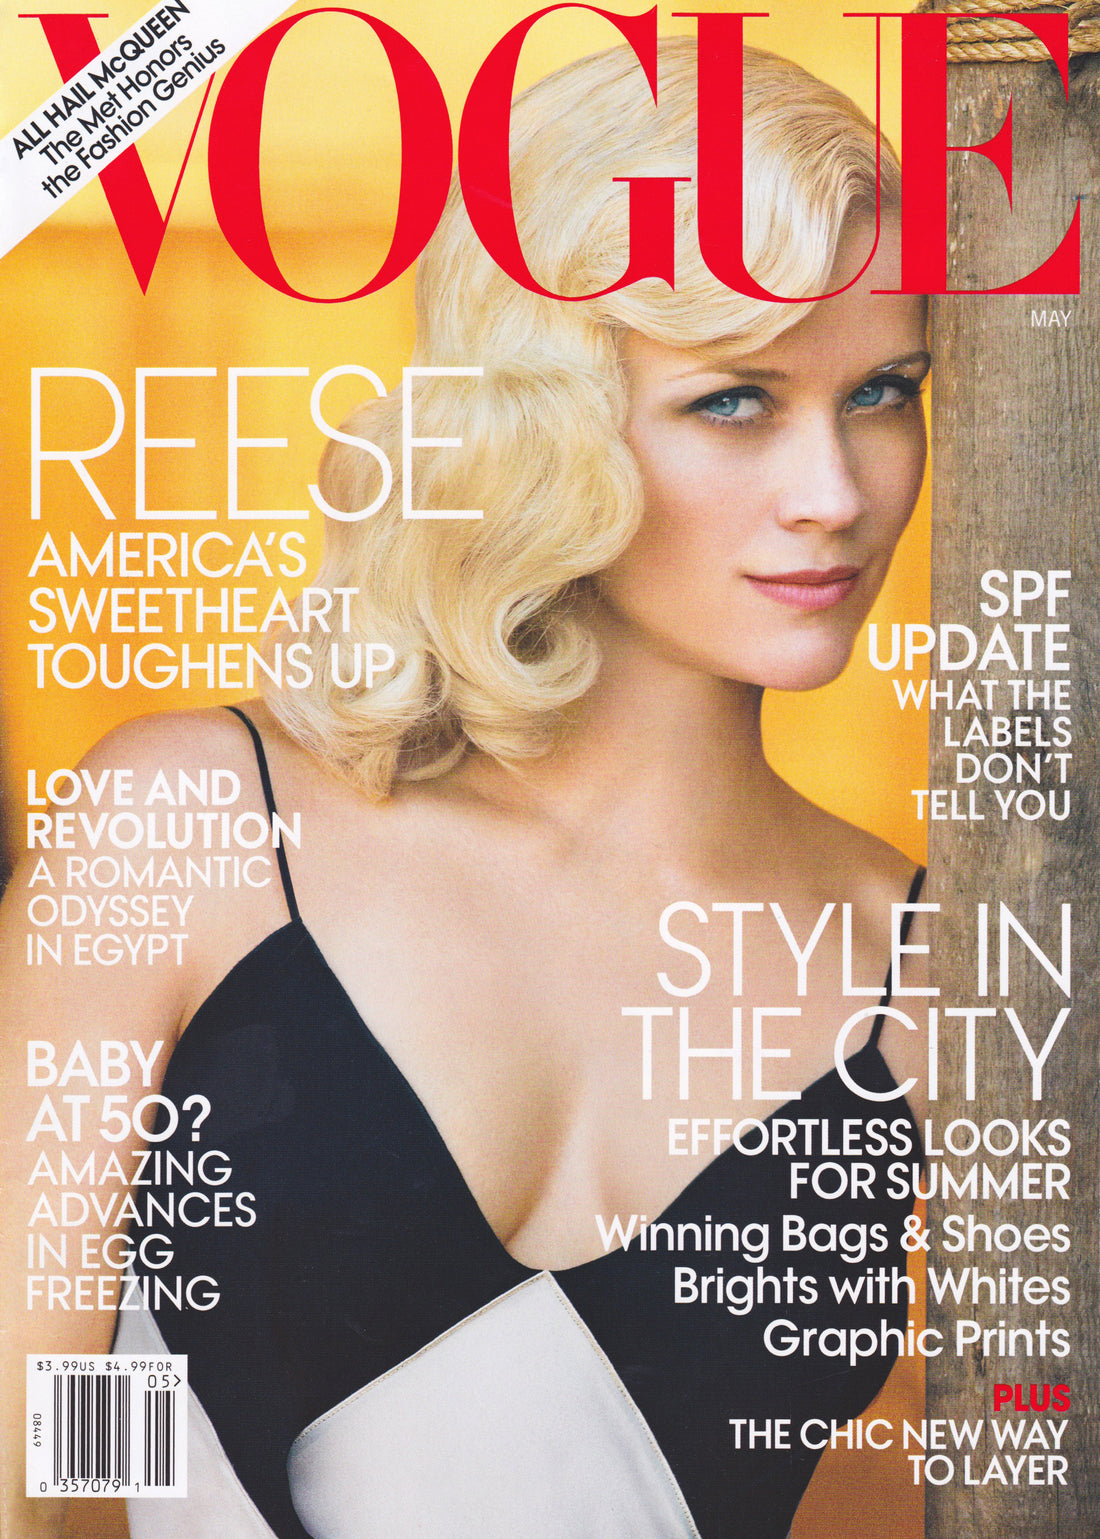 Vogue - May 2011